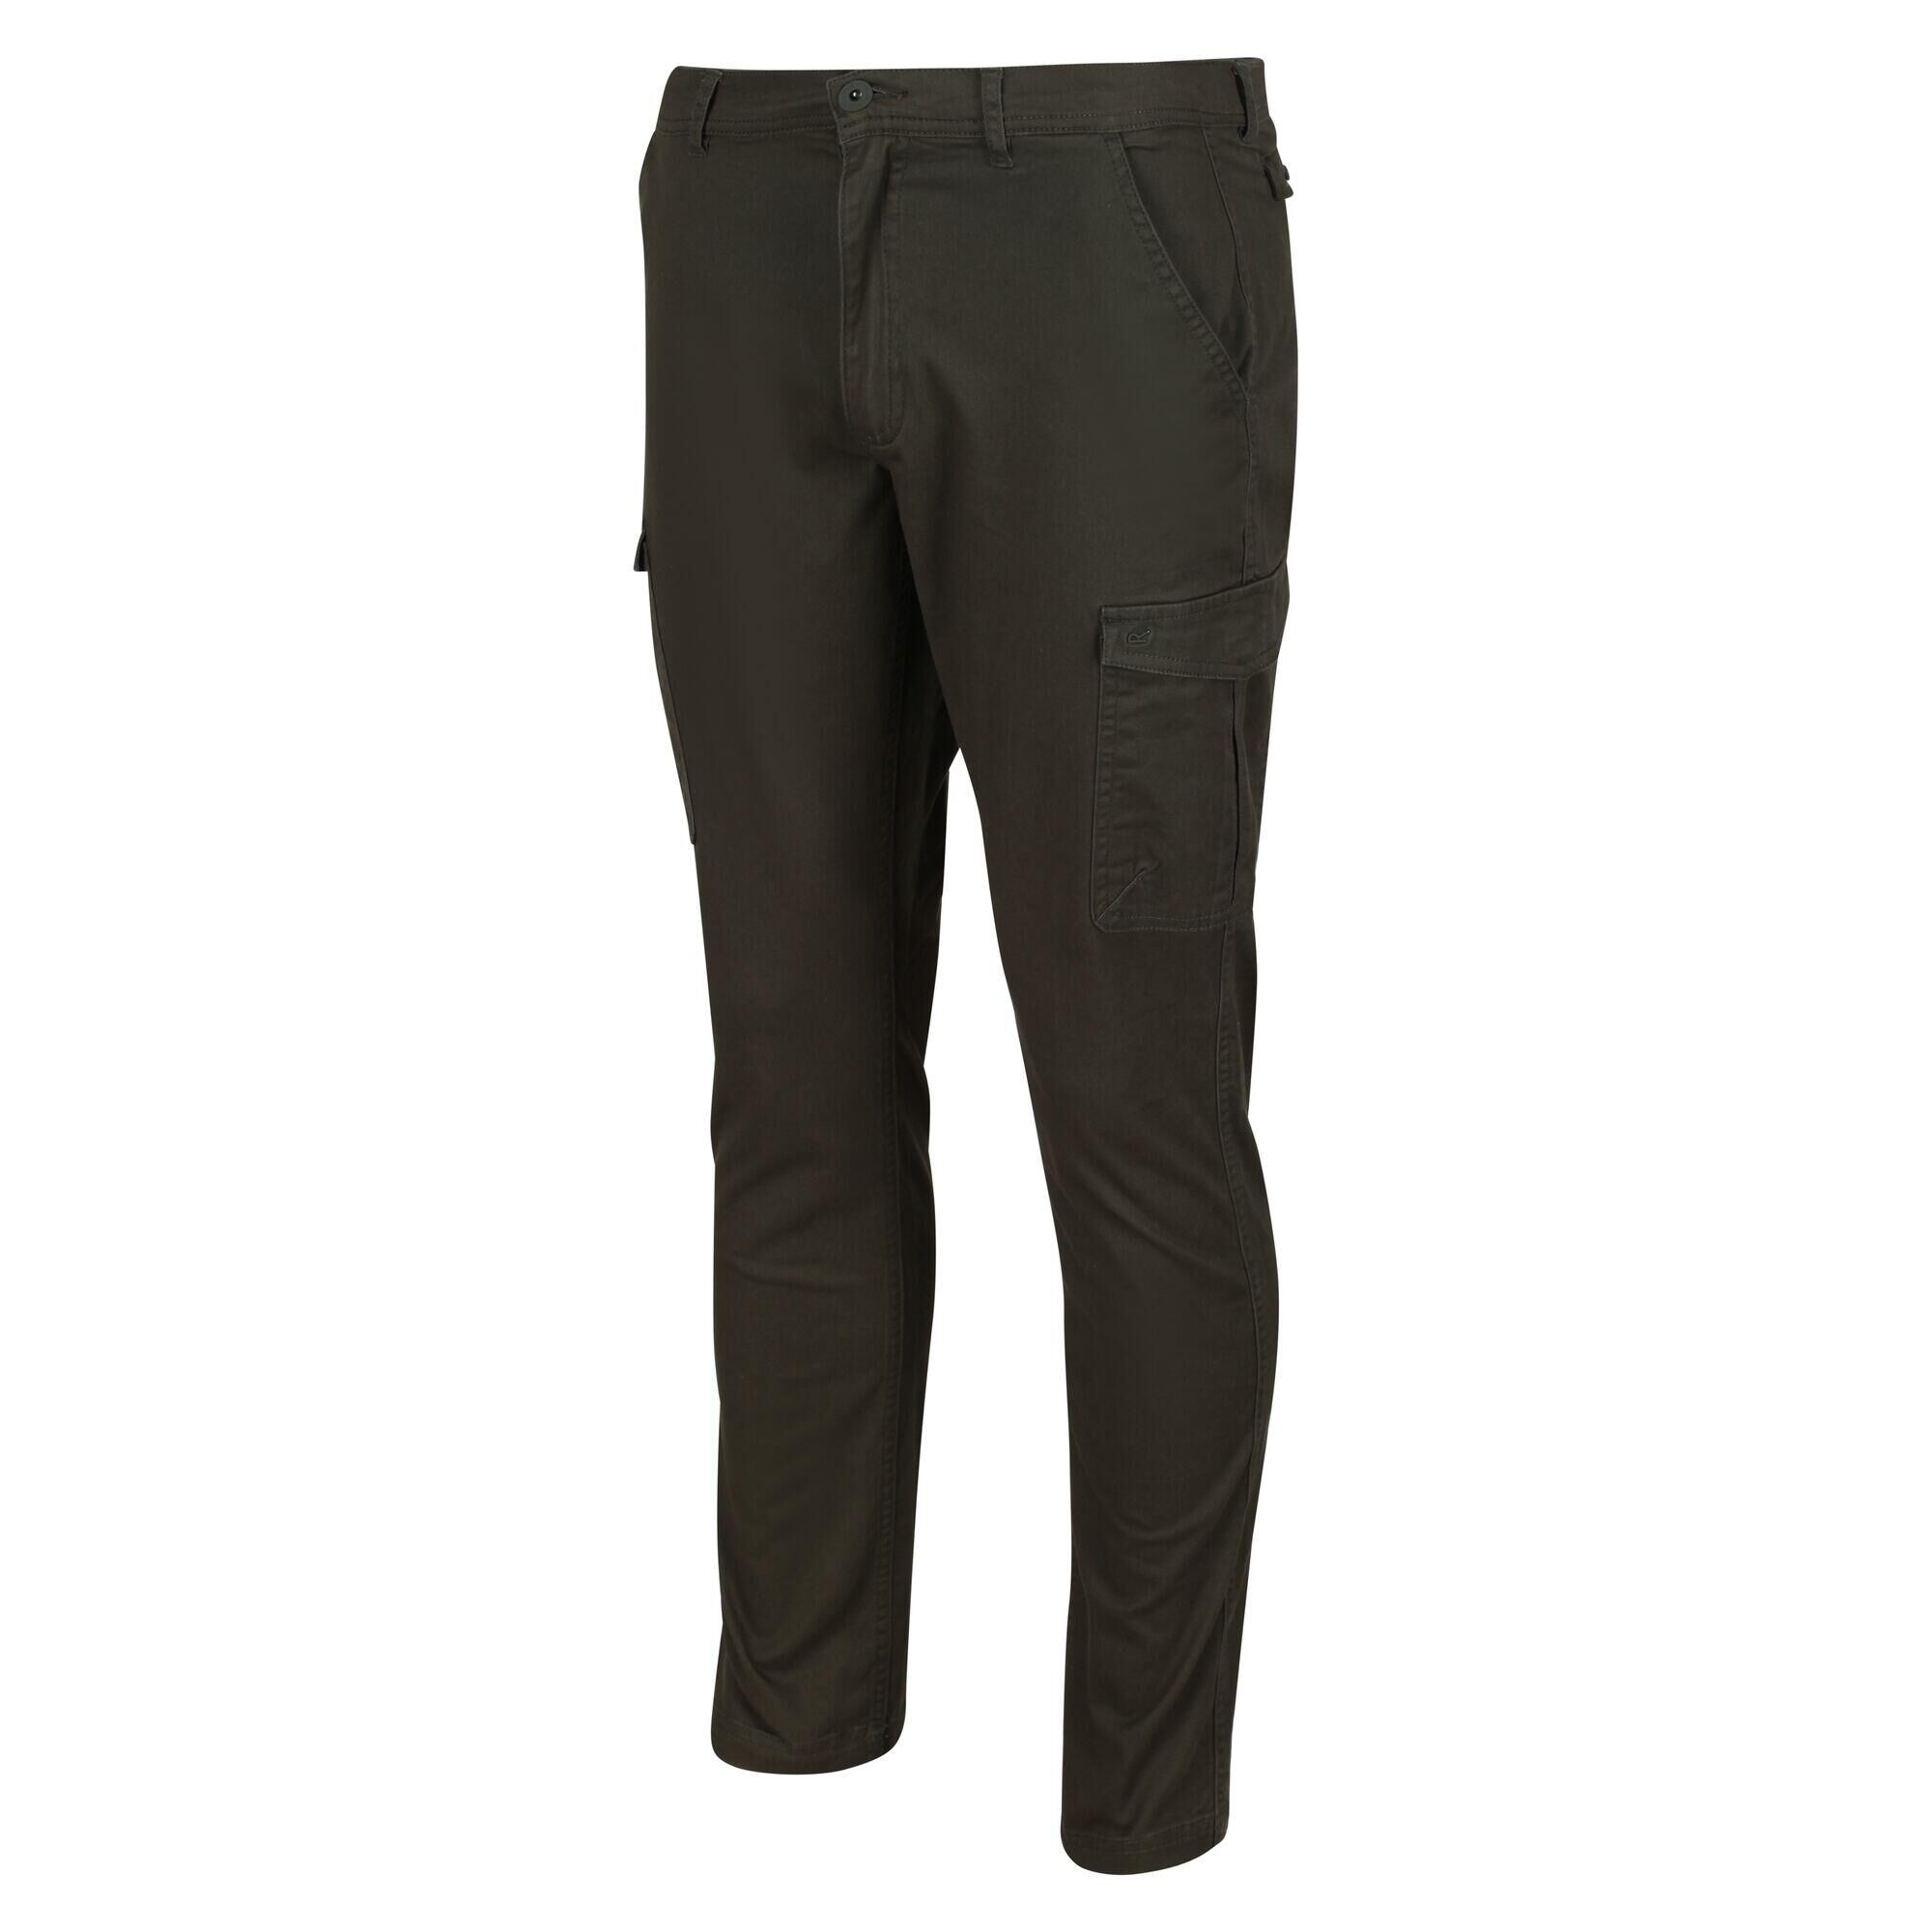 REGATTA Bryer II Men's Walking Cargo Trousers - Dark Khaki